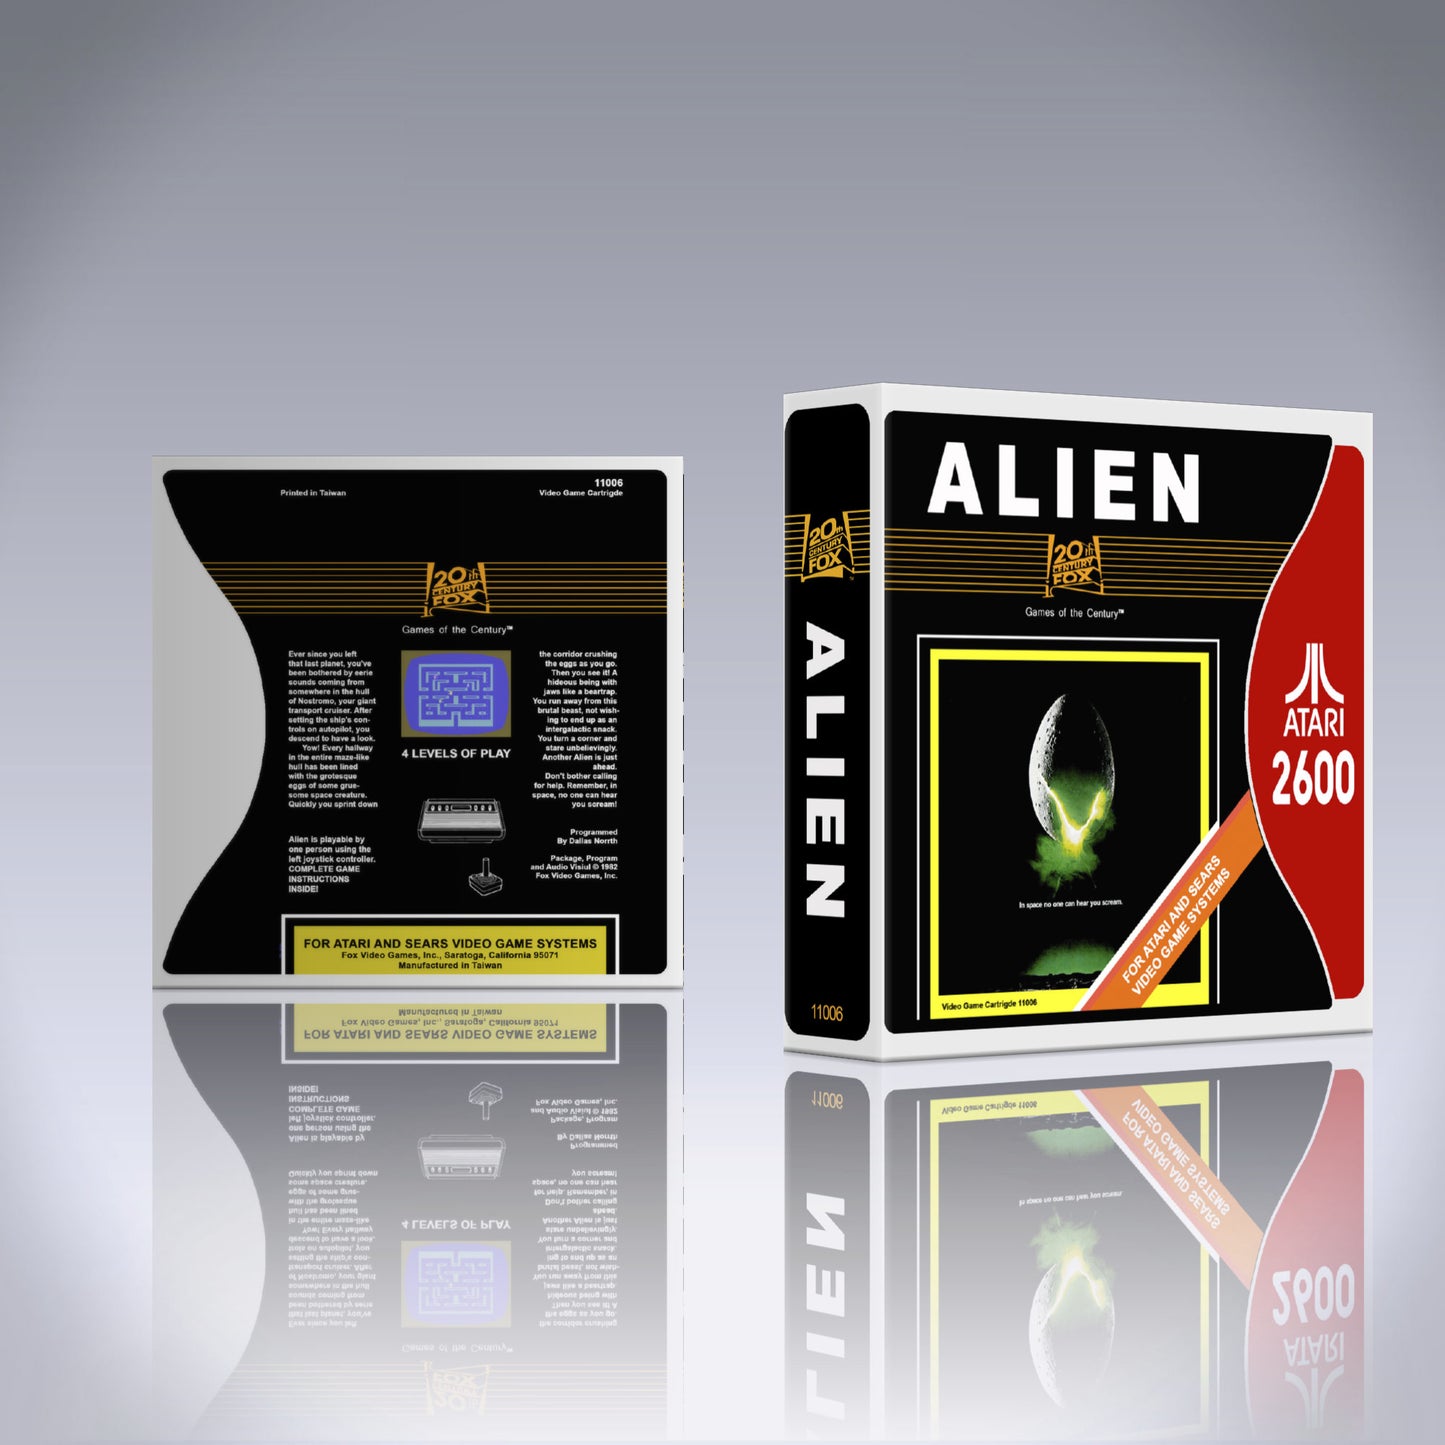 Atari 2600 Case - NO GAME - Alien